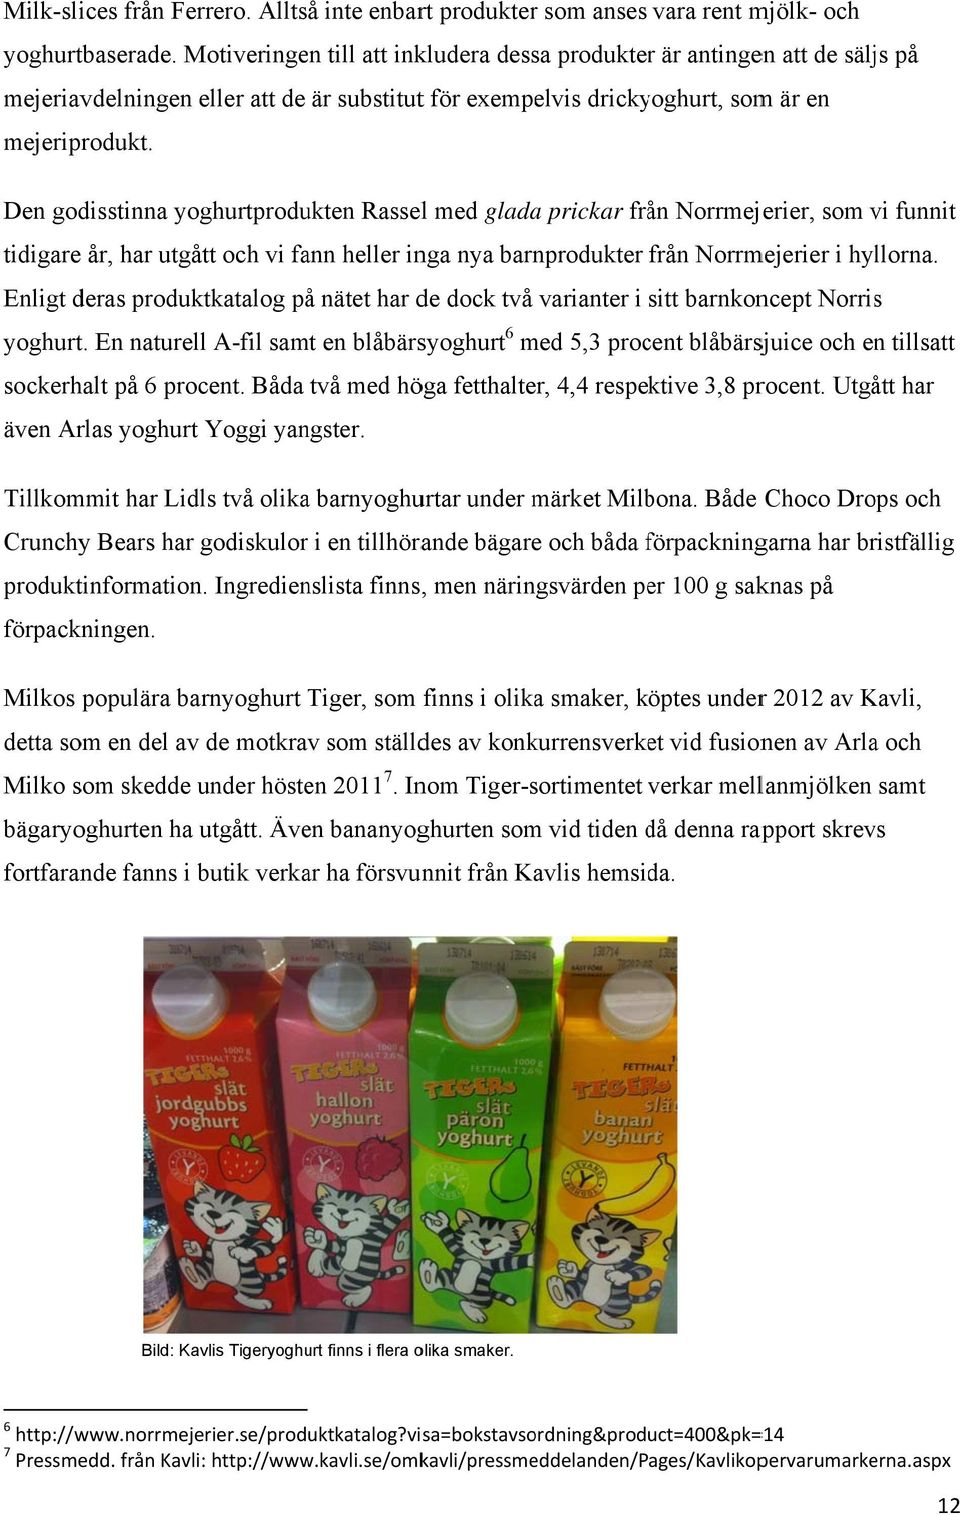 Den godisstinna yoghurtprodukten Rassell med gladaa prickar från Norrmejerier, som vi funnit tidigare år, har utgått och vi fann heller inga nya barnprodukter från Norrmejerier i hyllorna.